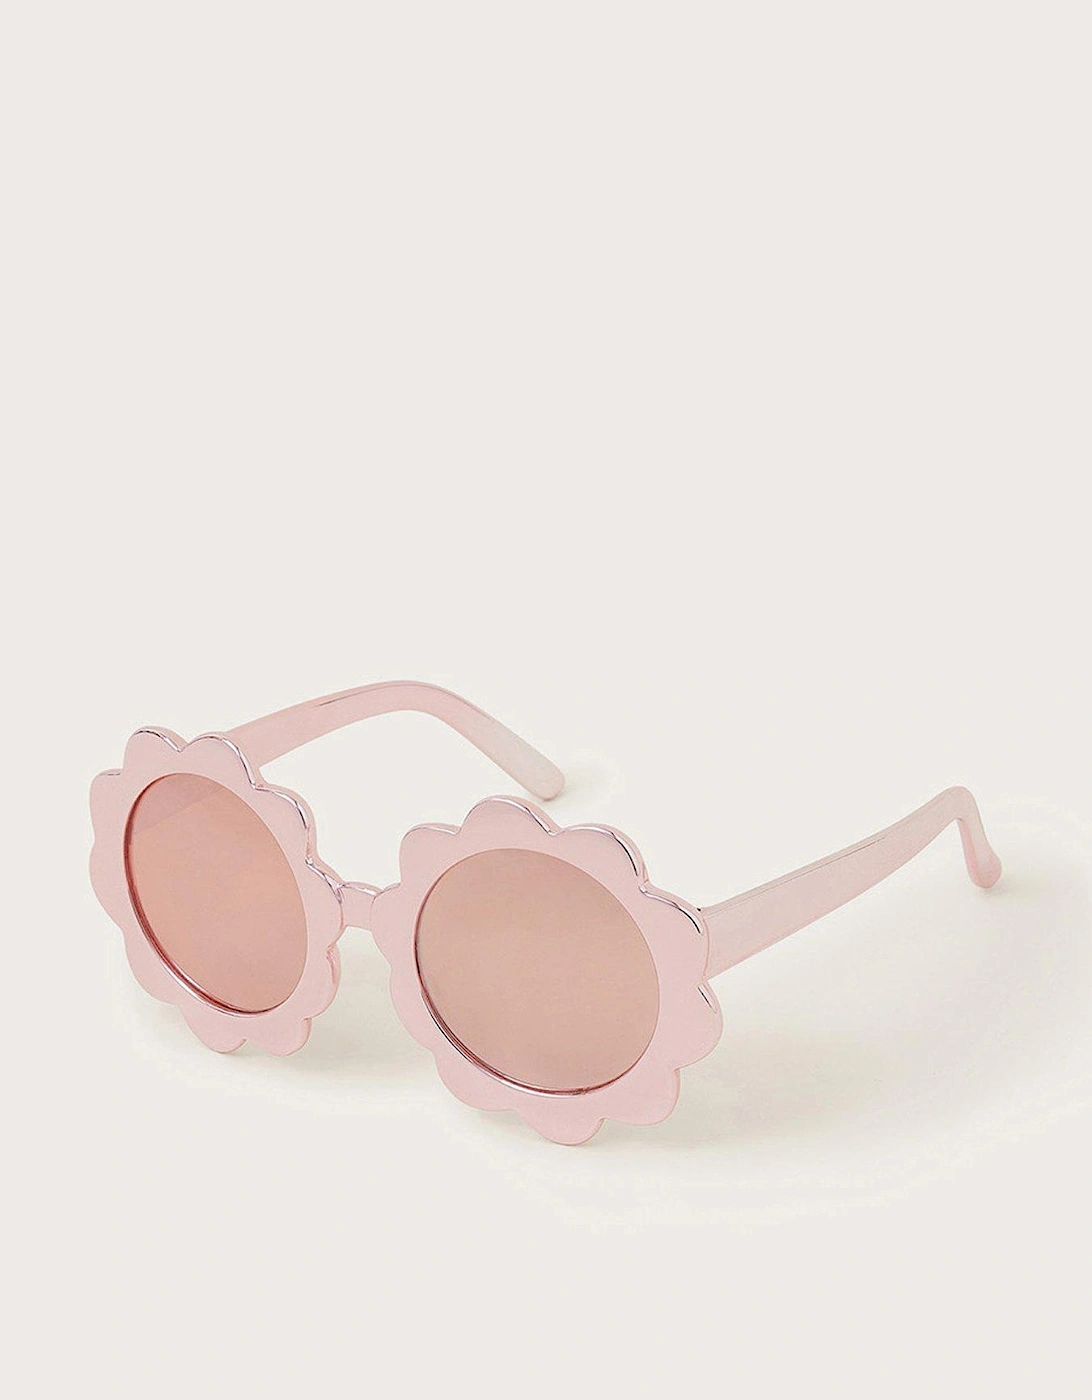 Girls Flower Sunglasses - Rose Gold, 2 of 1